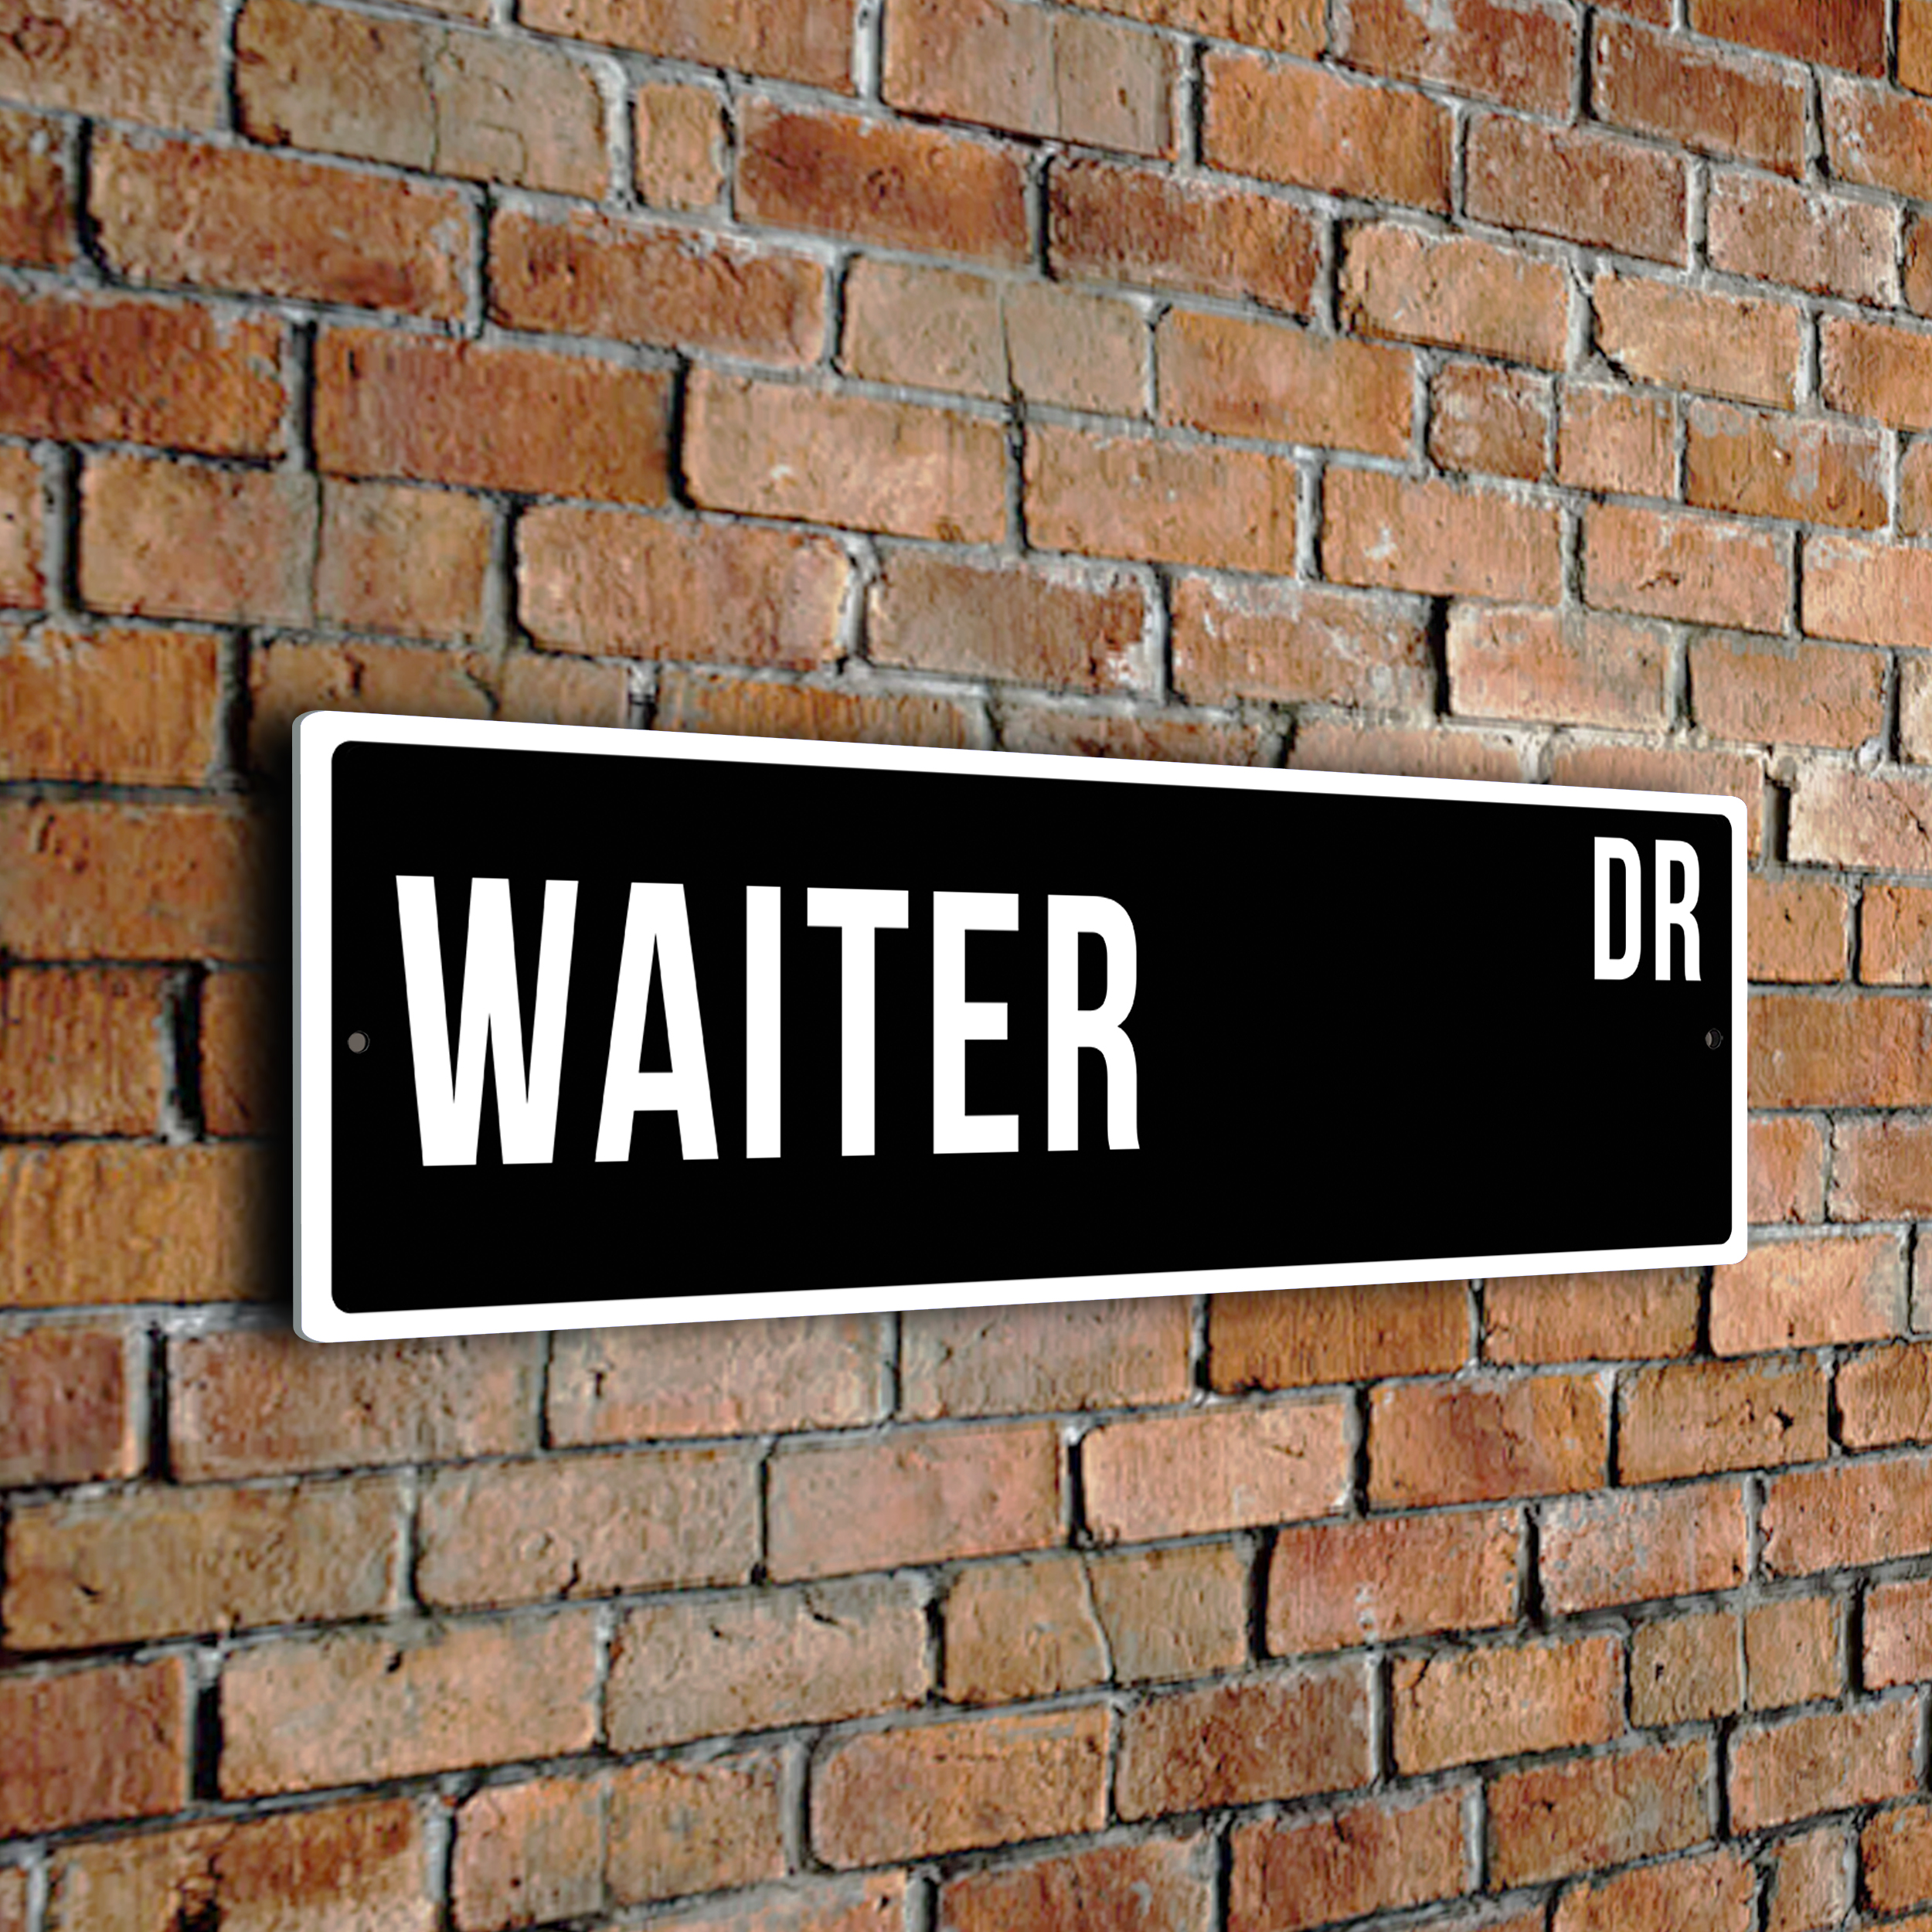 Waiter street sign